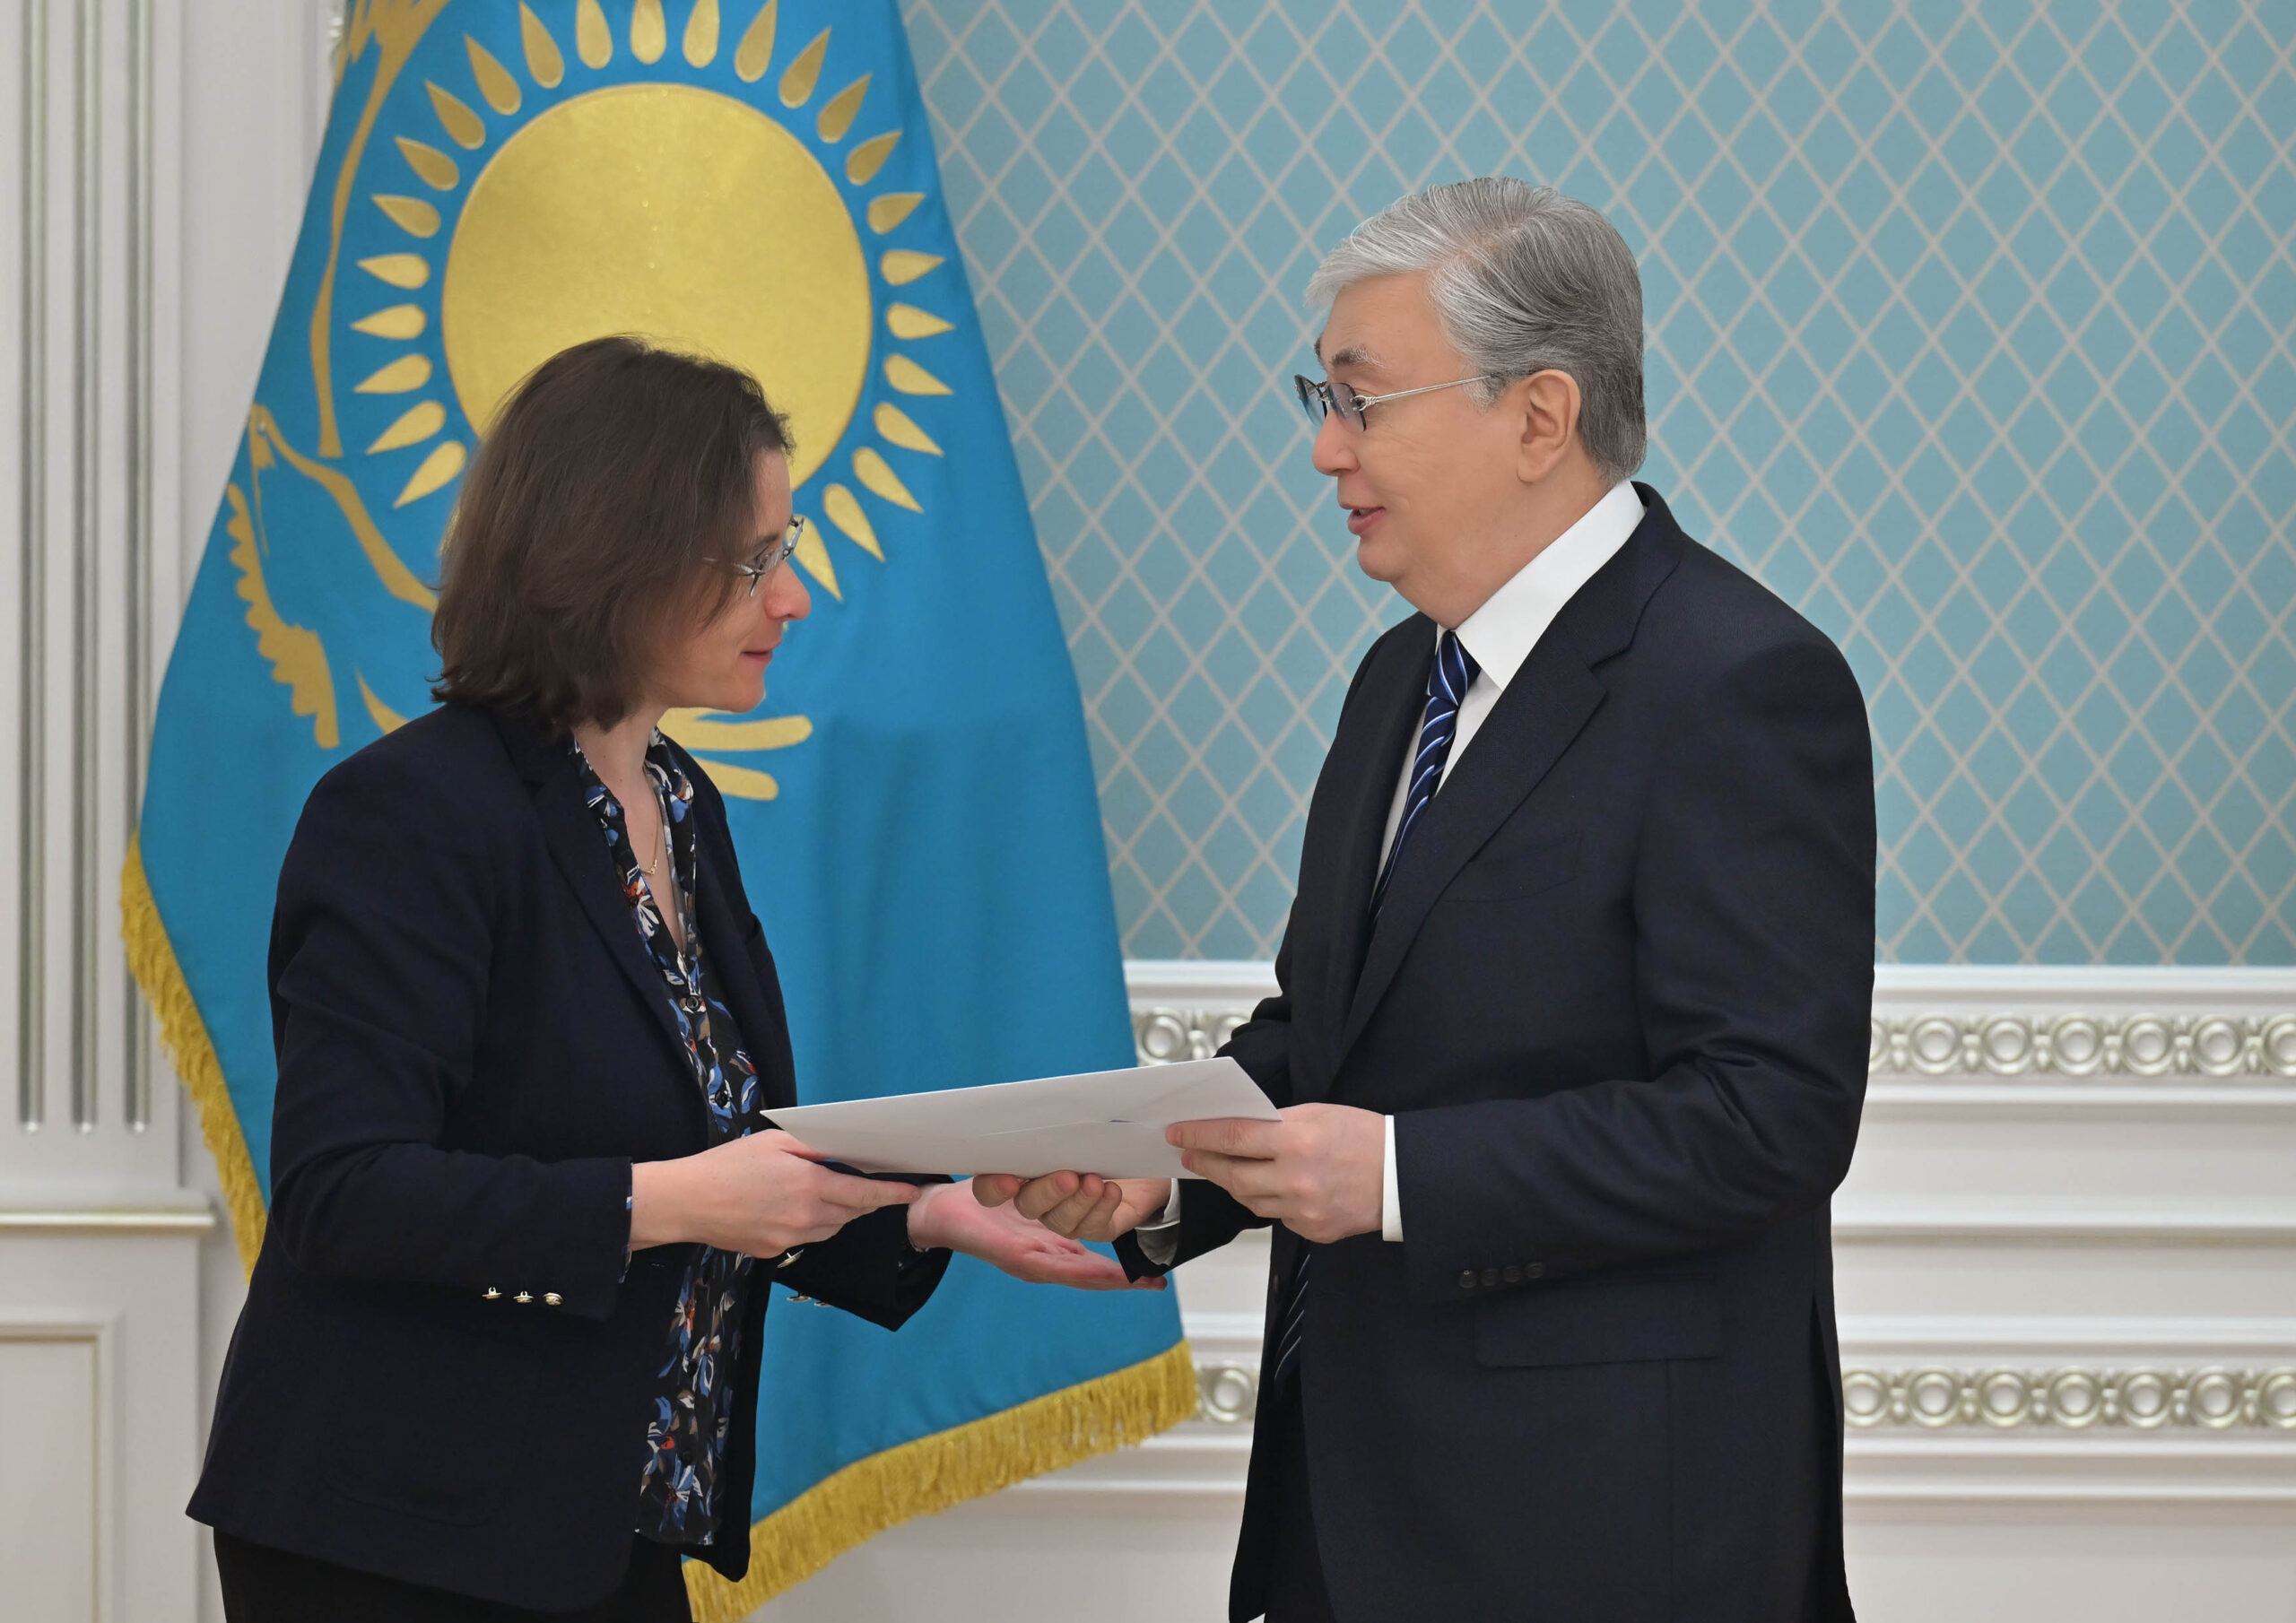 Le conseiller diplomatique du président français a déclaré que la France soutenait pleinement les réformes politiques au Kazakhstan